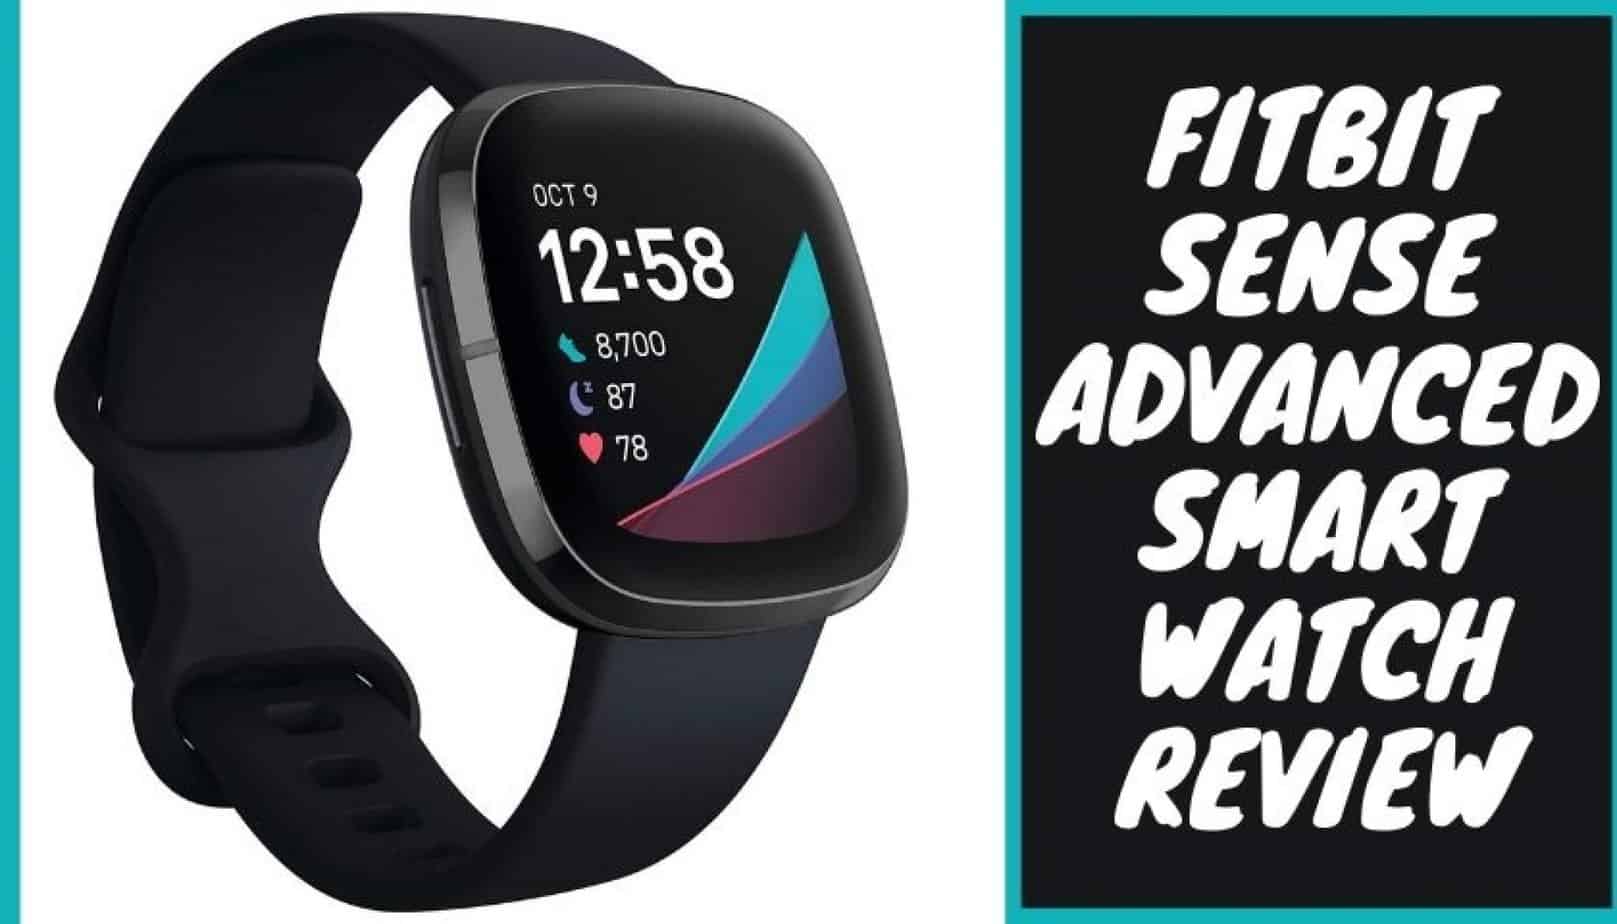 Fitbit Sense Advanced Smartwatch Review | Pickedwatch